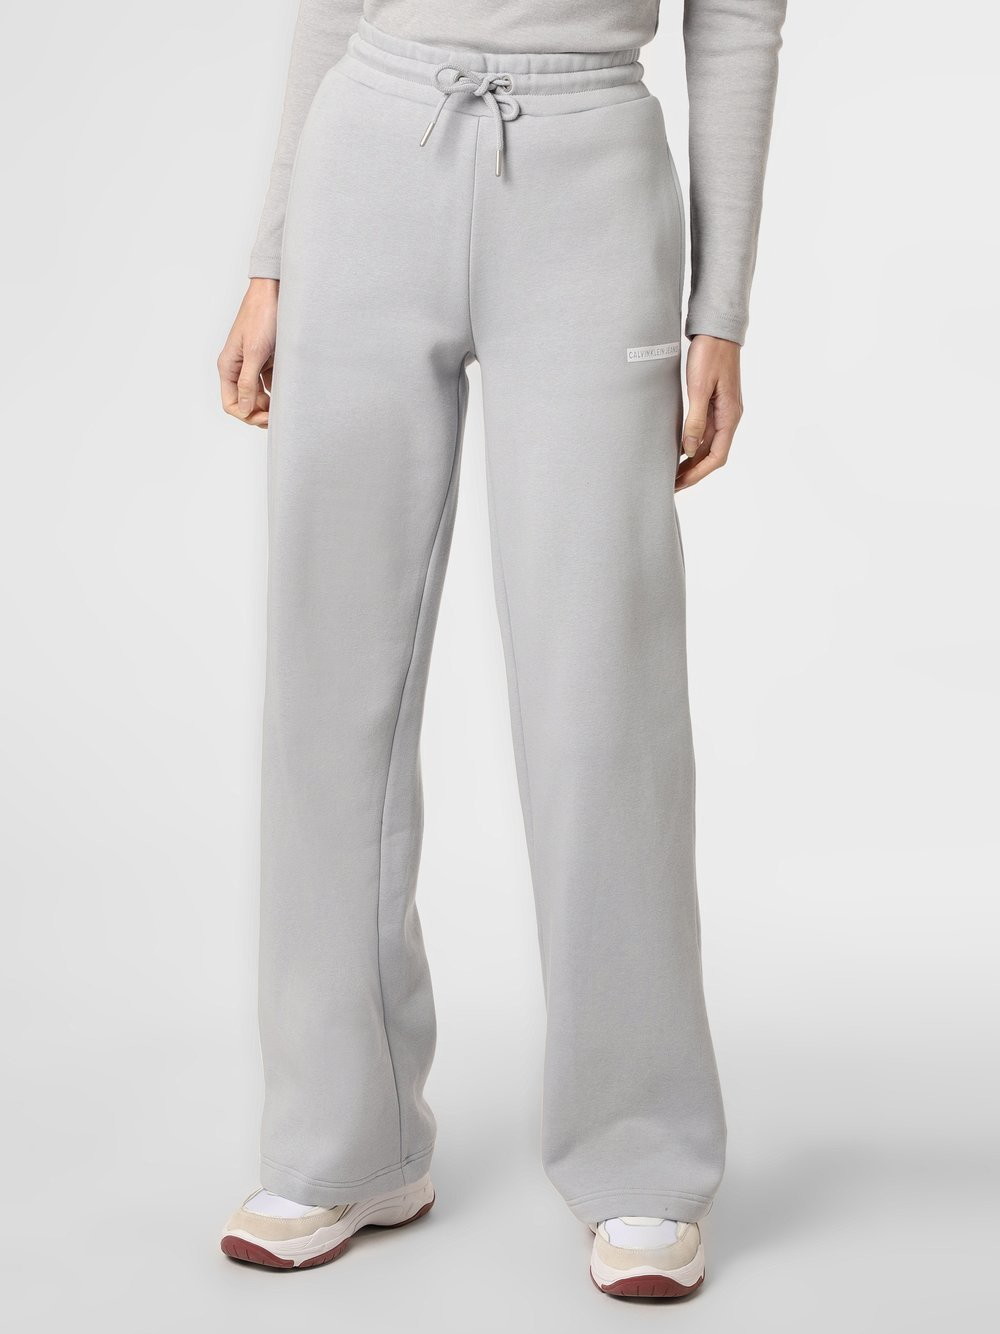 Calvin Klein Jeans Jeans - Damskie spodnie dresowe, szary